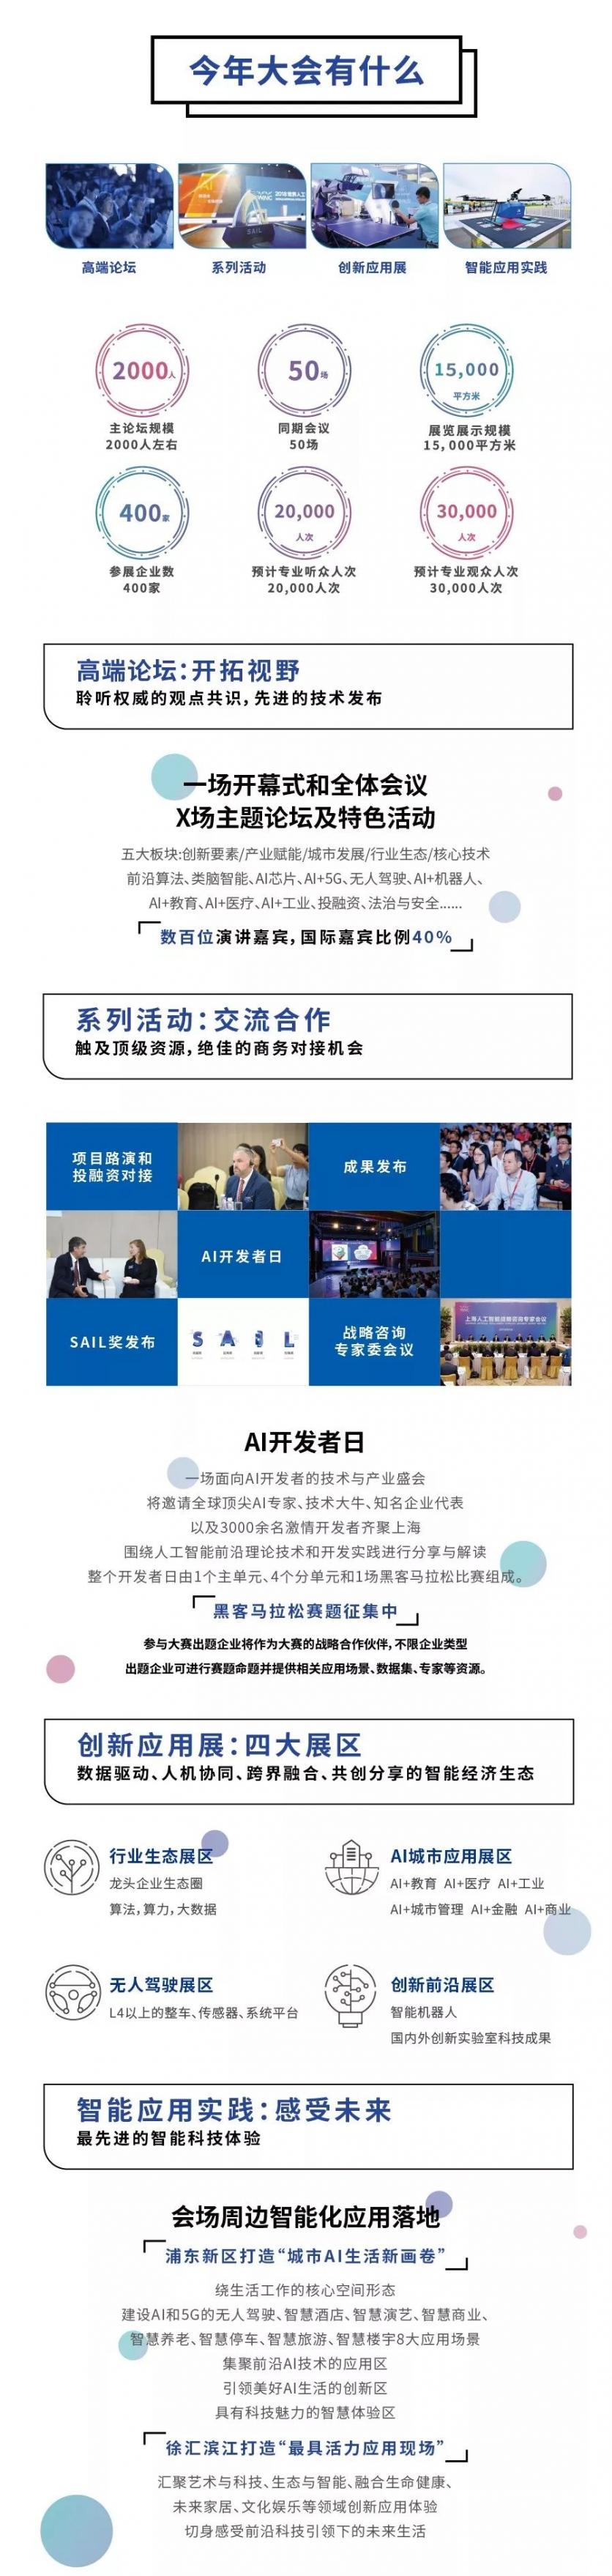 上海人工智能大会2019时间+报名入口+活动亮点+交通